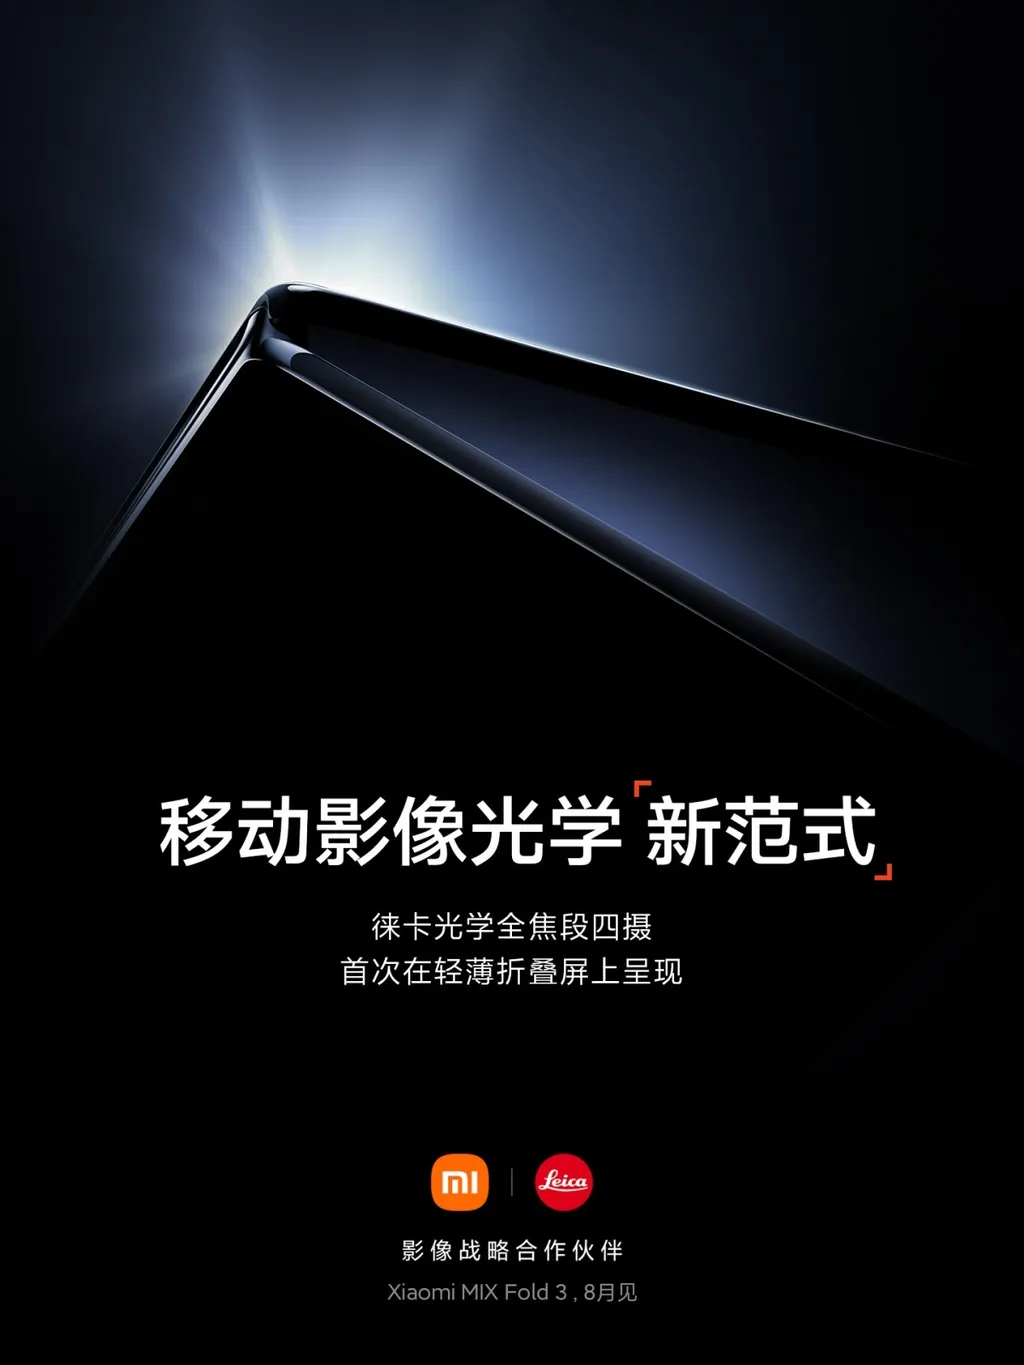 Xiaomi confirmou presença de quatro câmeras traseiras no Mix Fold 3 (Imagem: Divulgação/Xiaomi)